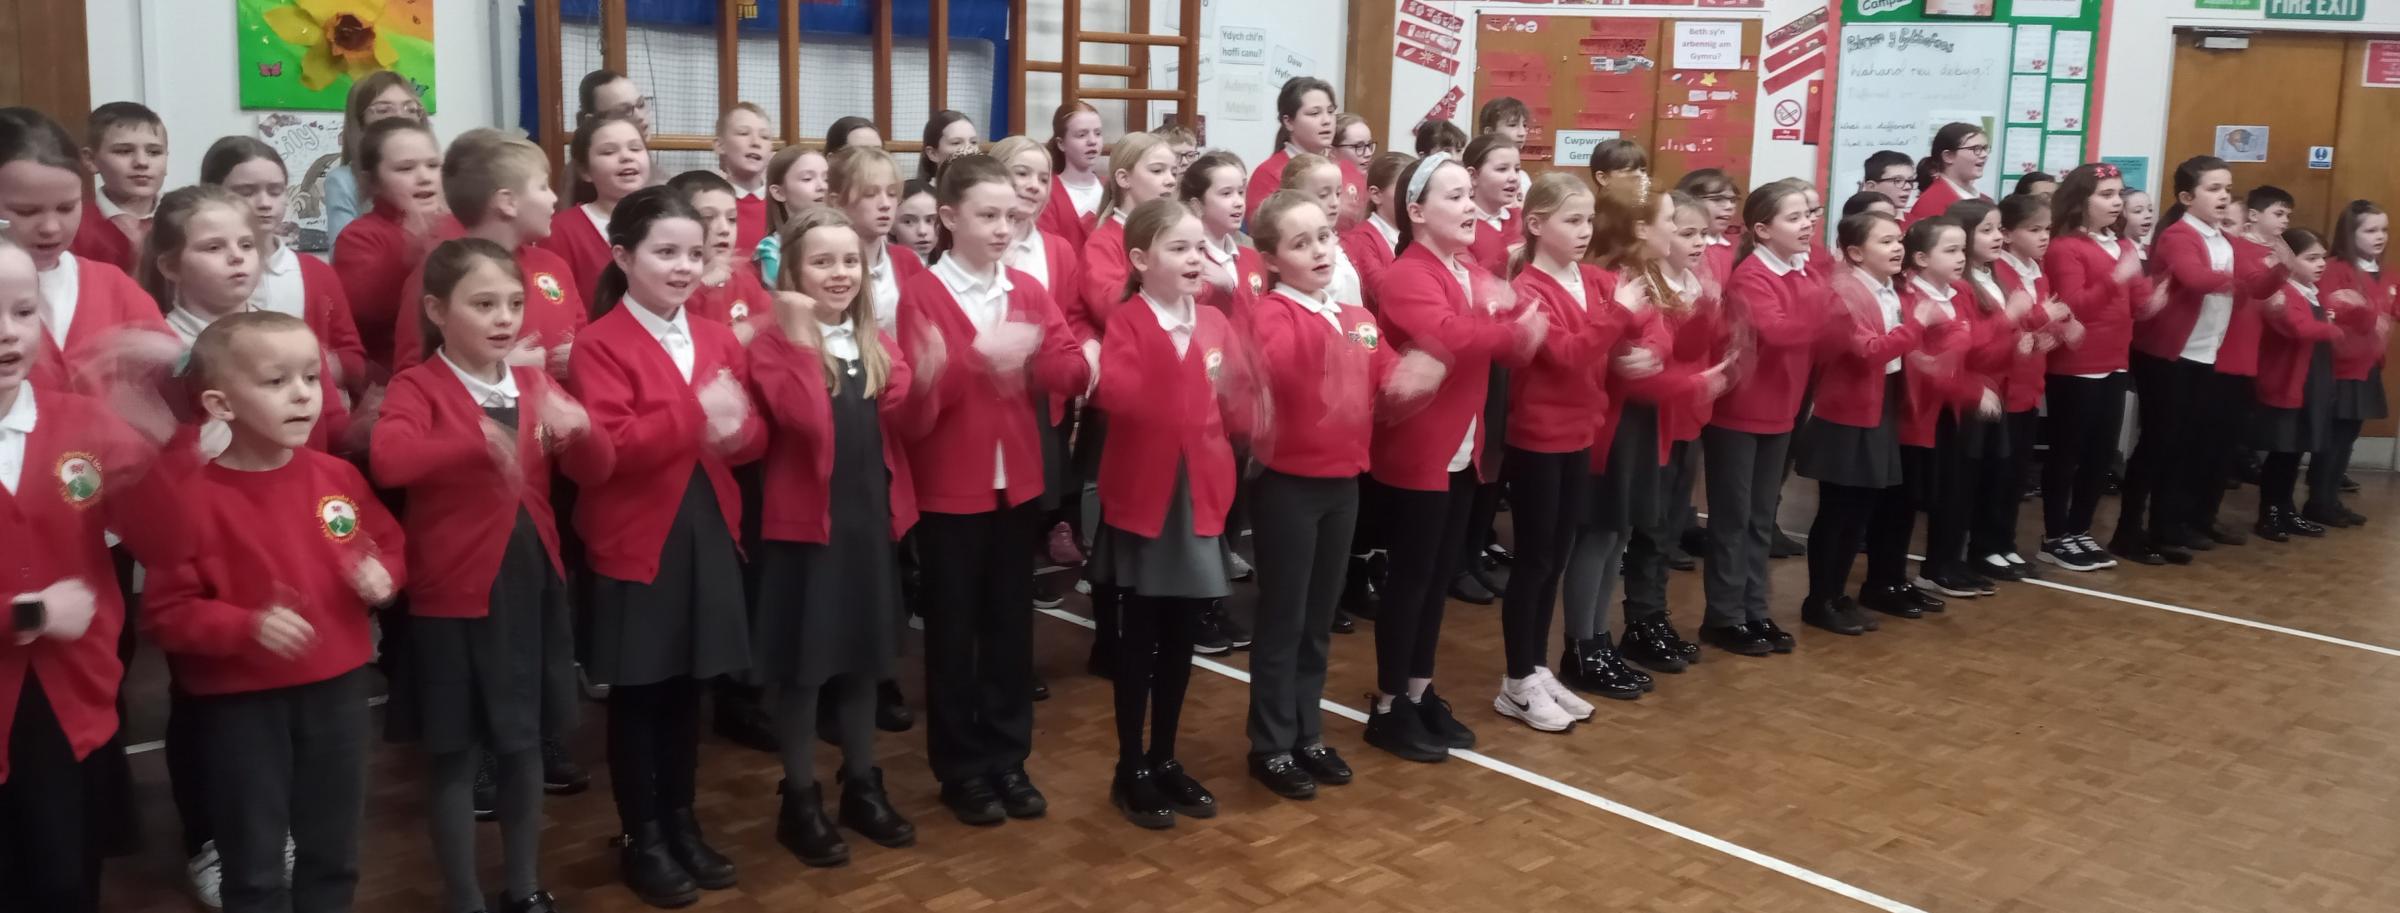 Ysgol Mynydd Isa British Sign Language choir in action.